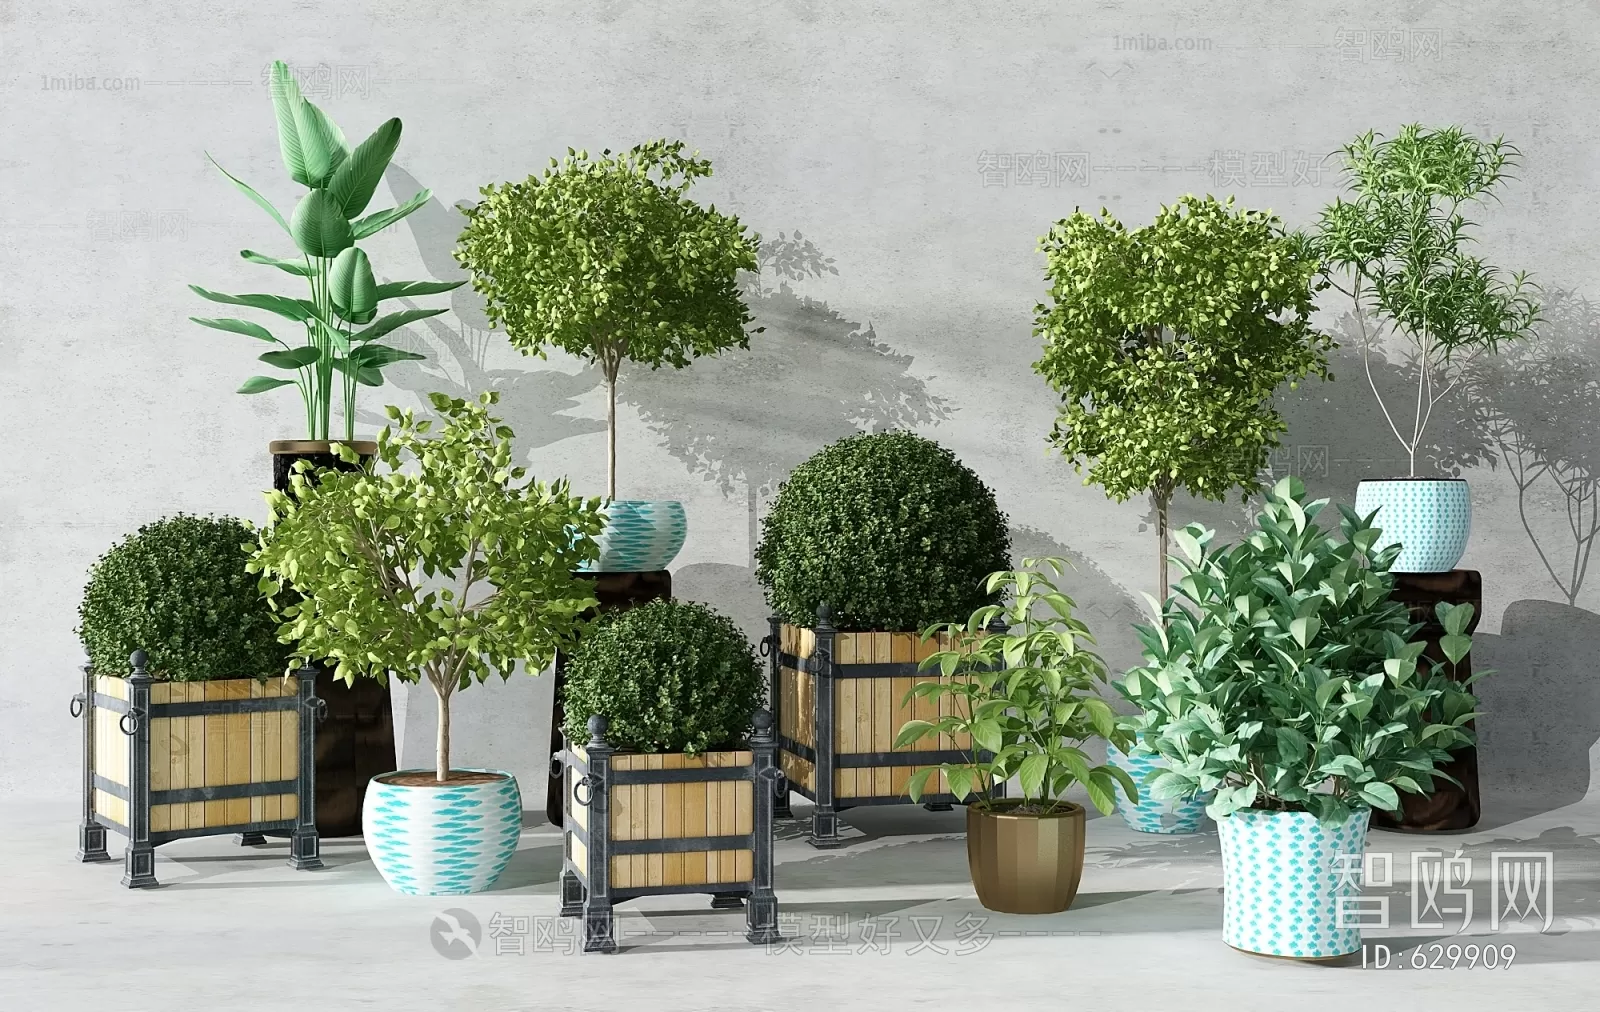 PLANT 3D MODELS – 053